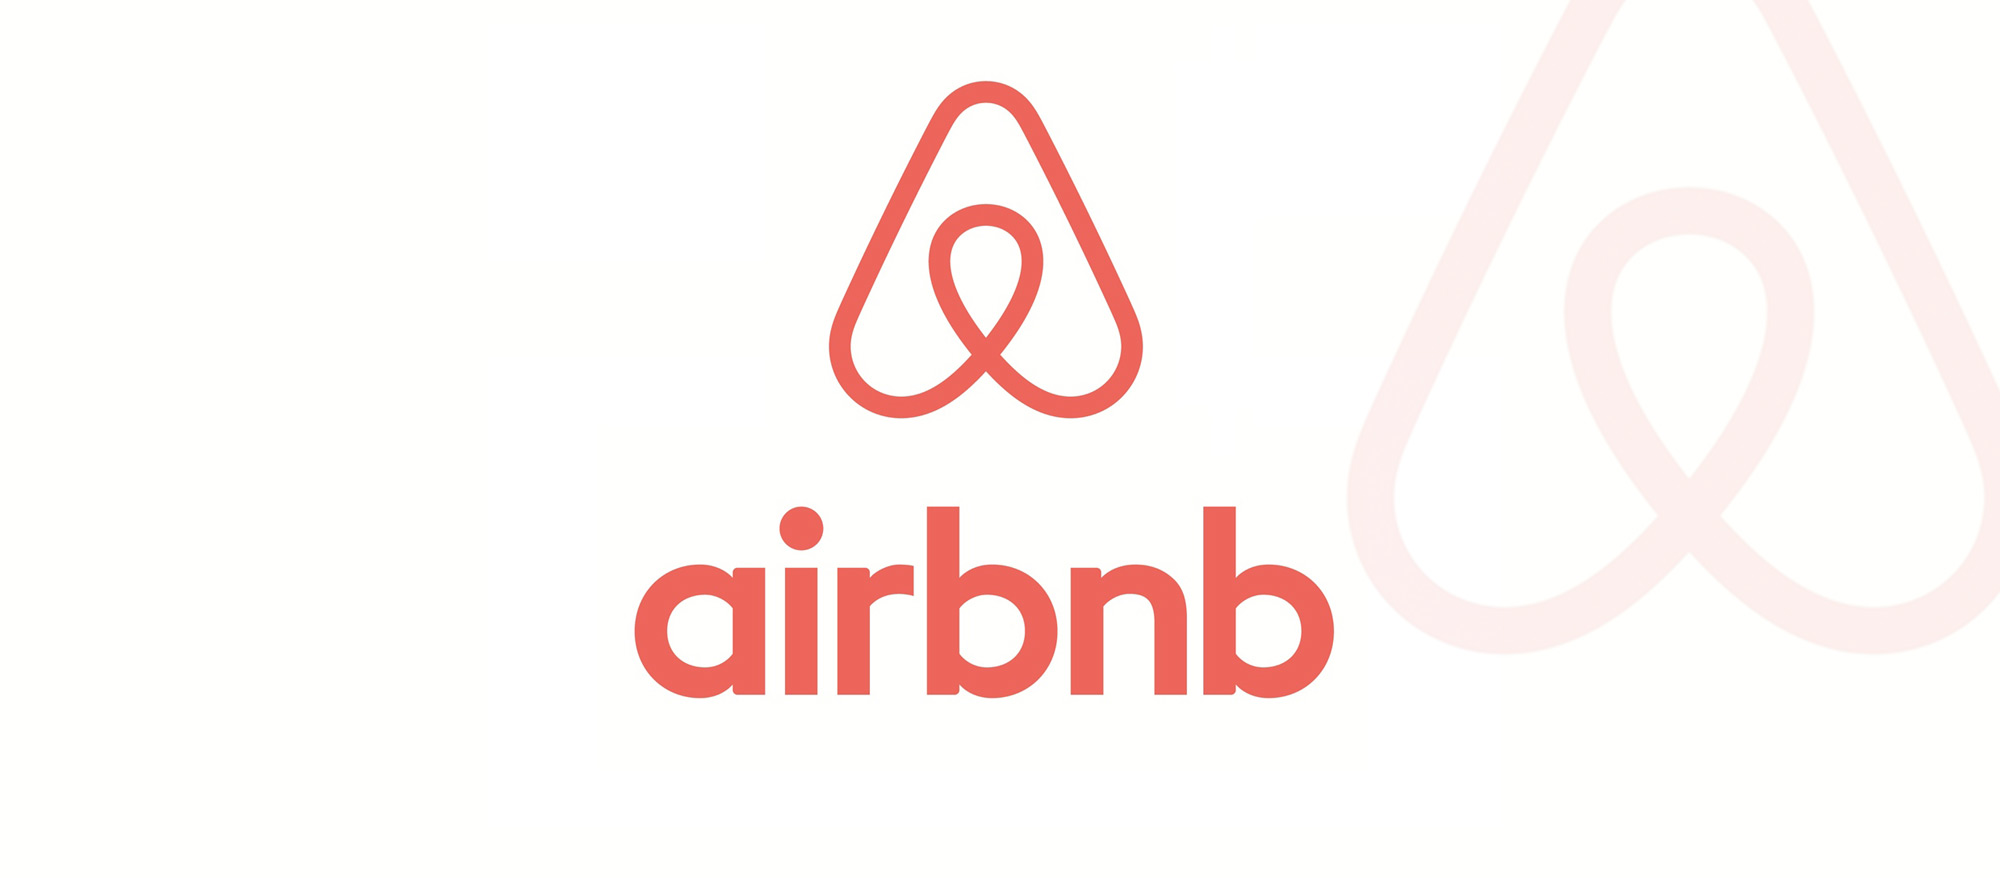 Airbnb, uma forma diferente de ficar alojado